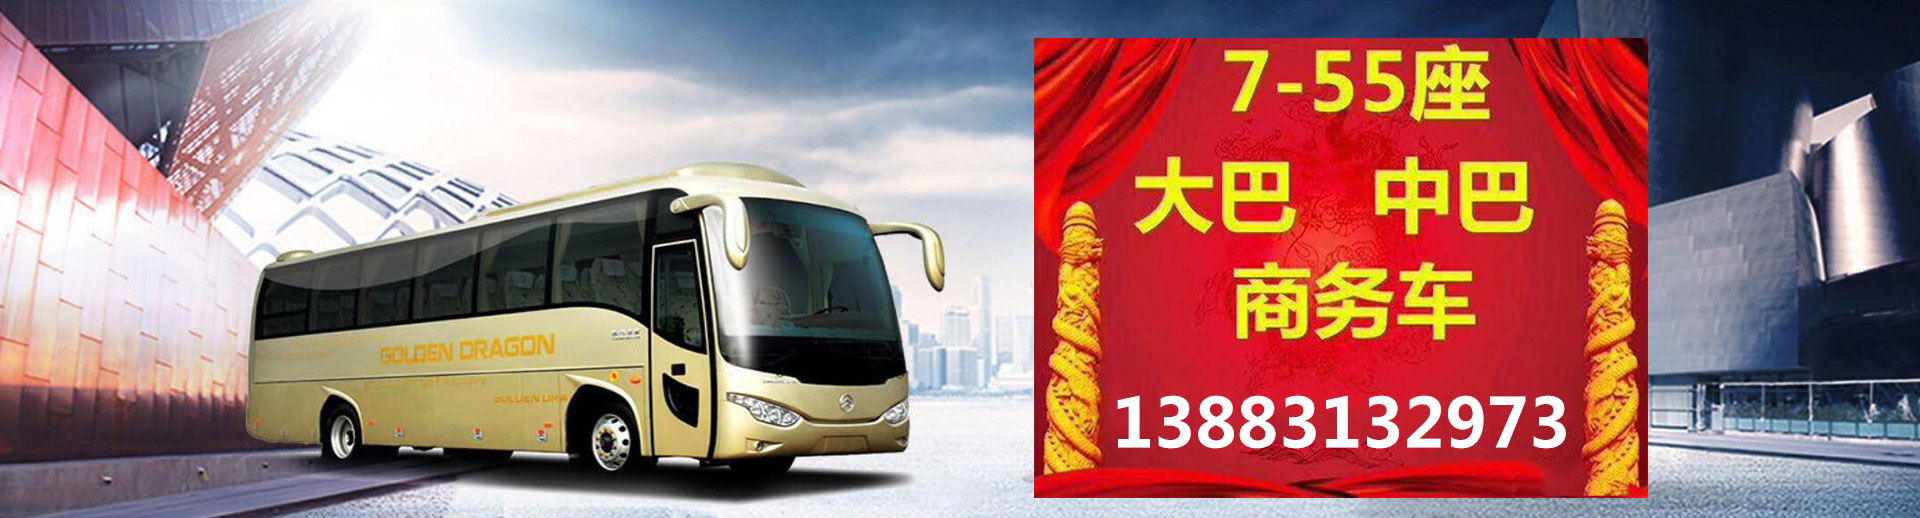 重庆郊旅汽车运输有限公司